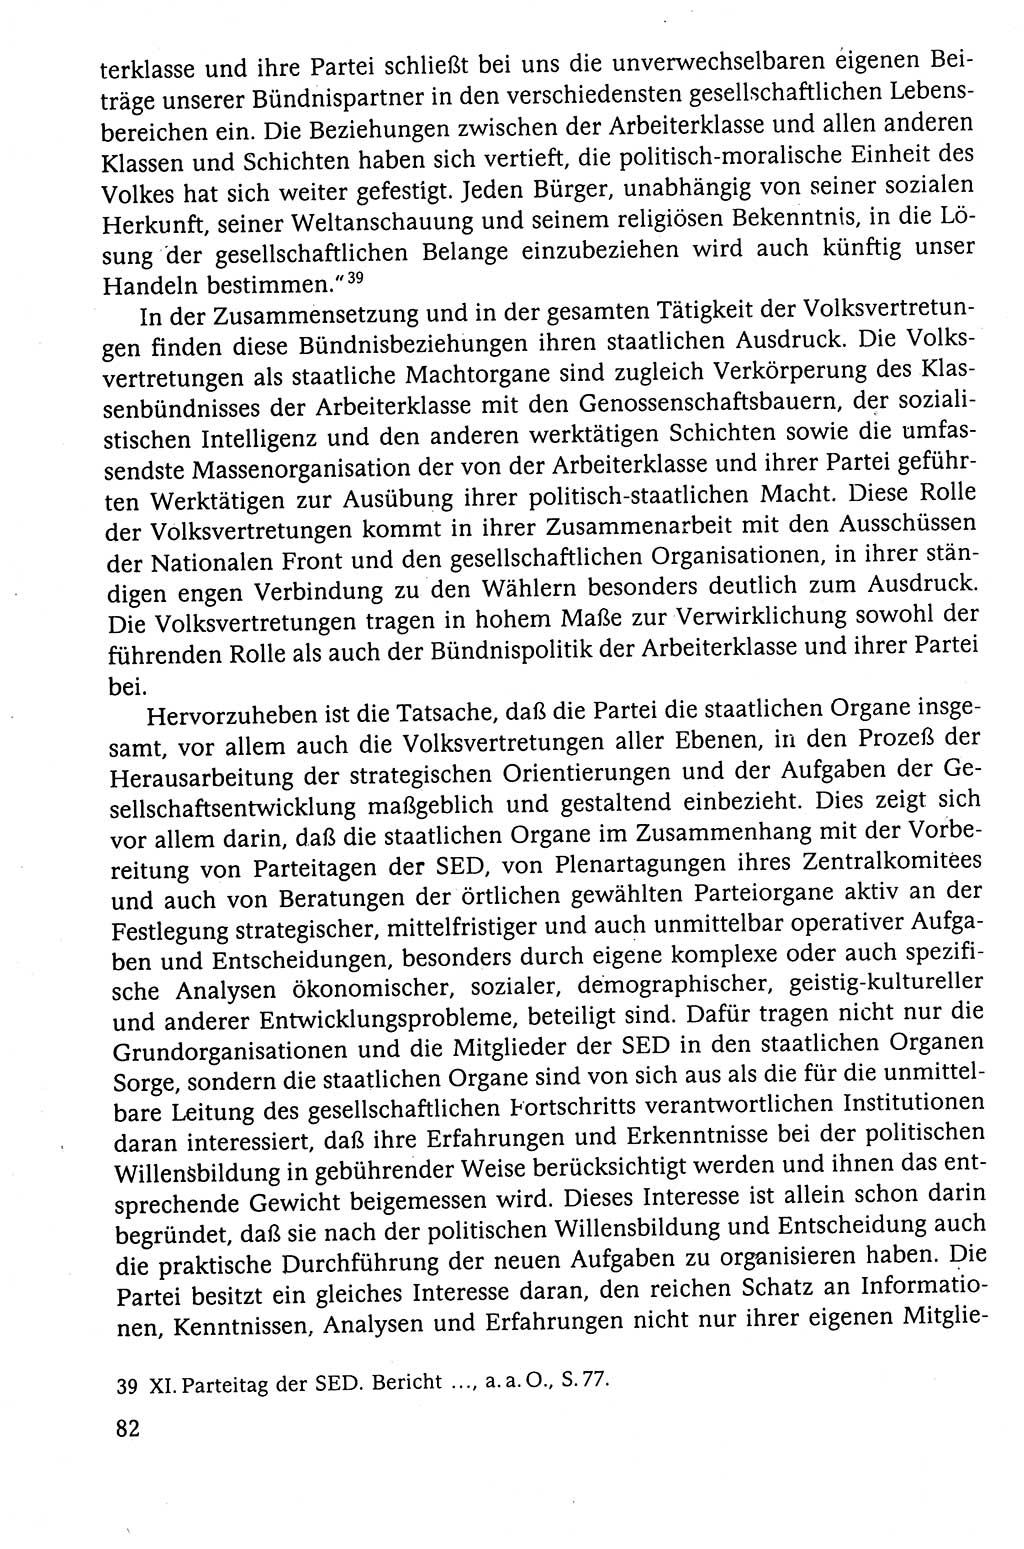 Der Staat im politischen System der DDR (Deutsche Demokratische Republik) 1986, Seite 82 (St. pol. Sys. DDR 1986, S. 82)